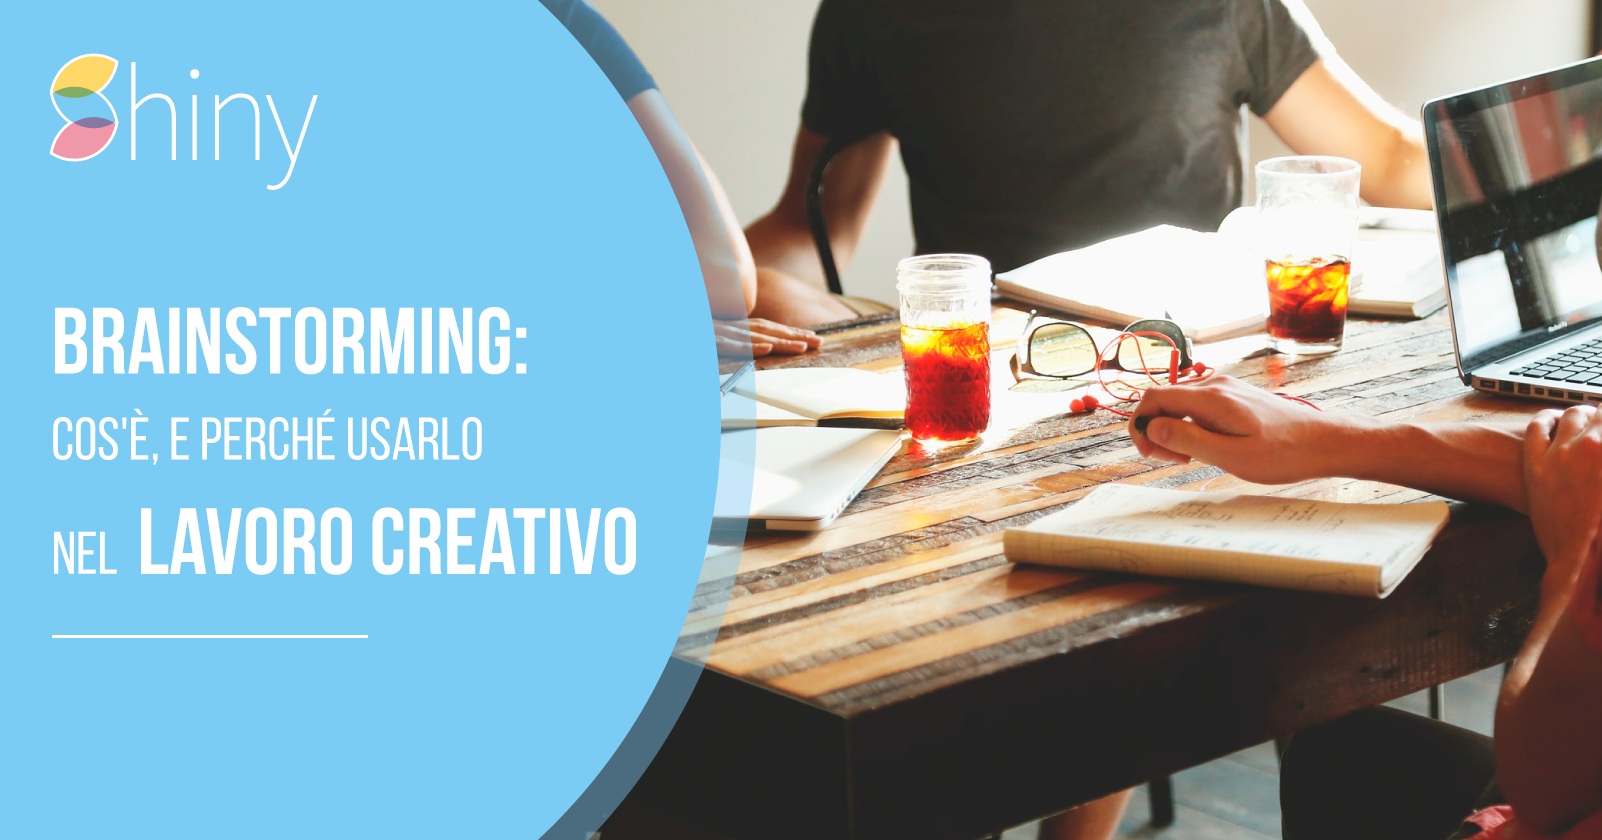 Al momento stai visualizzando Brainstorming: cos’è, e perché usarlo nel lavoro creativo